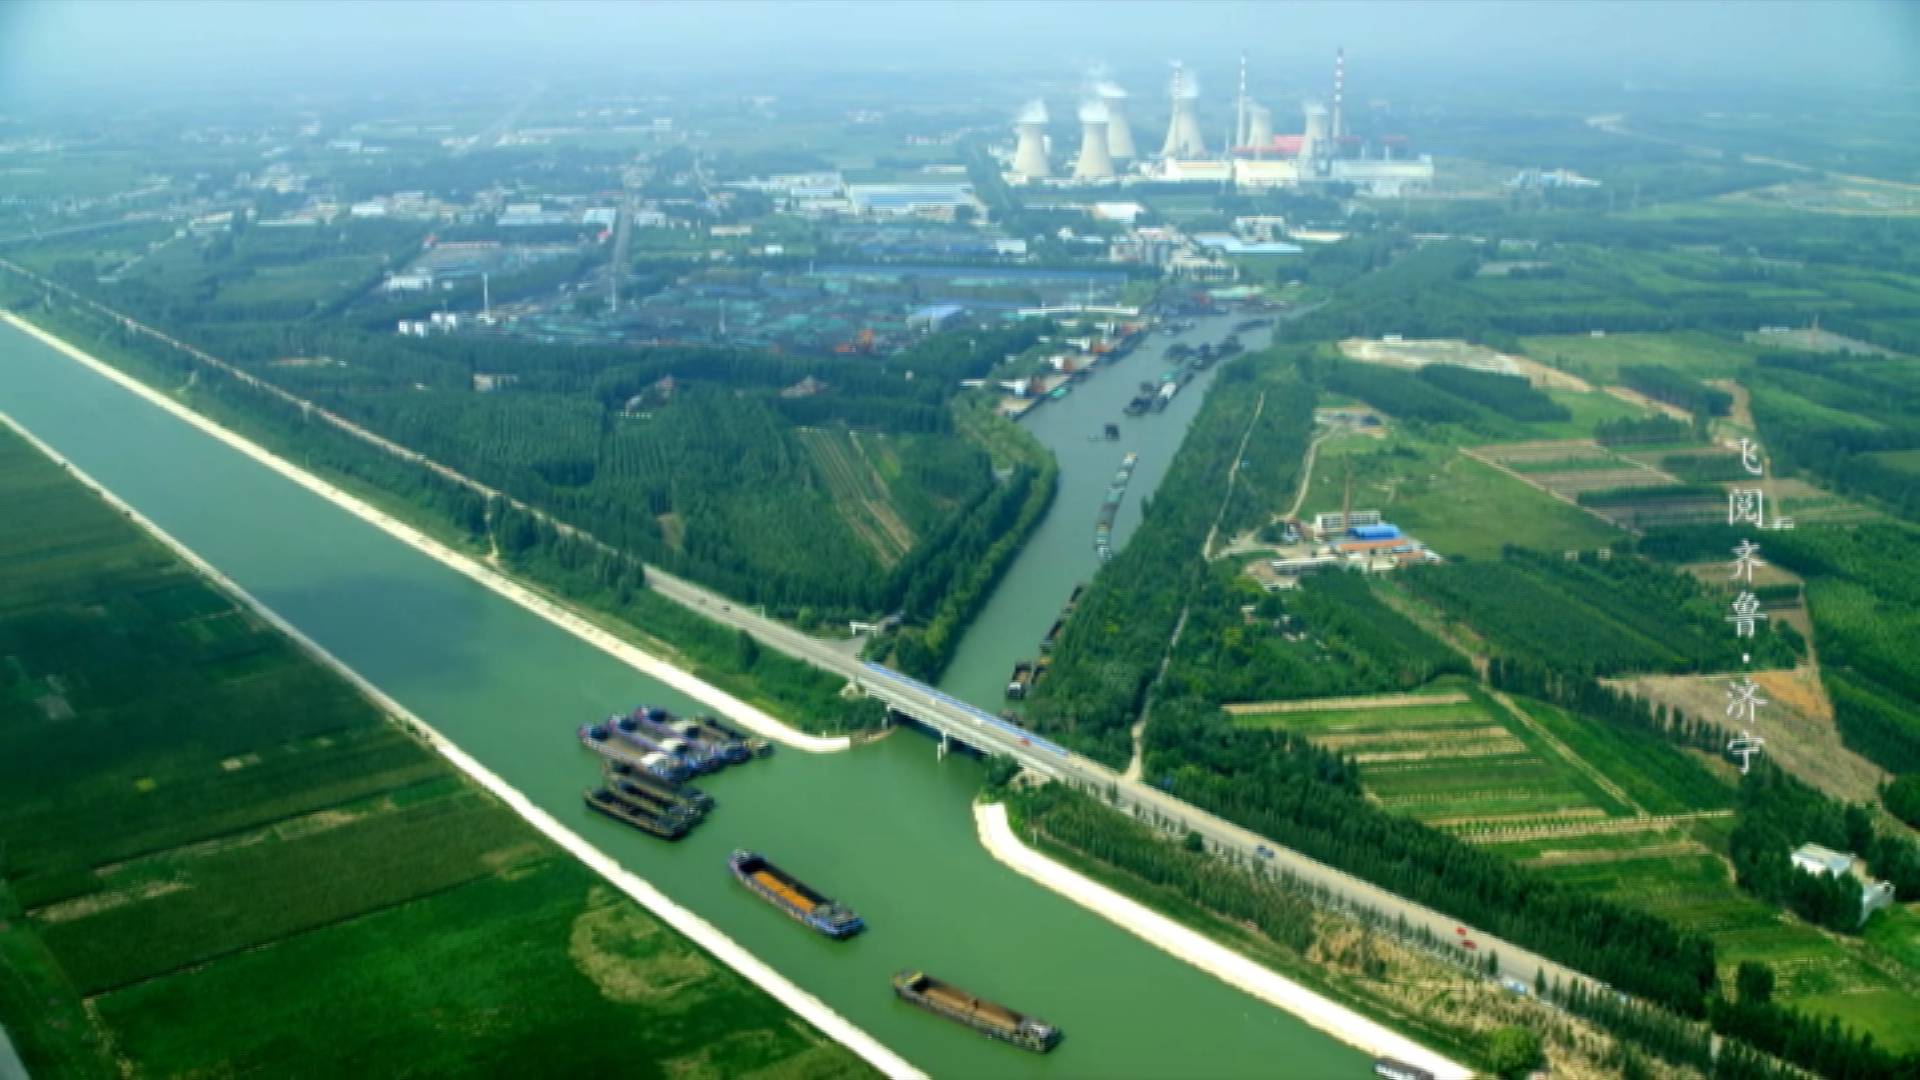 京杭大运河山东段城市图片